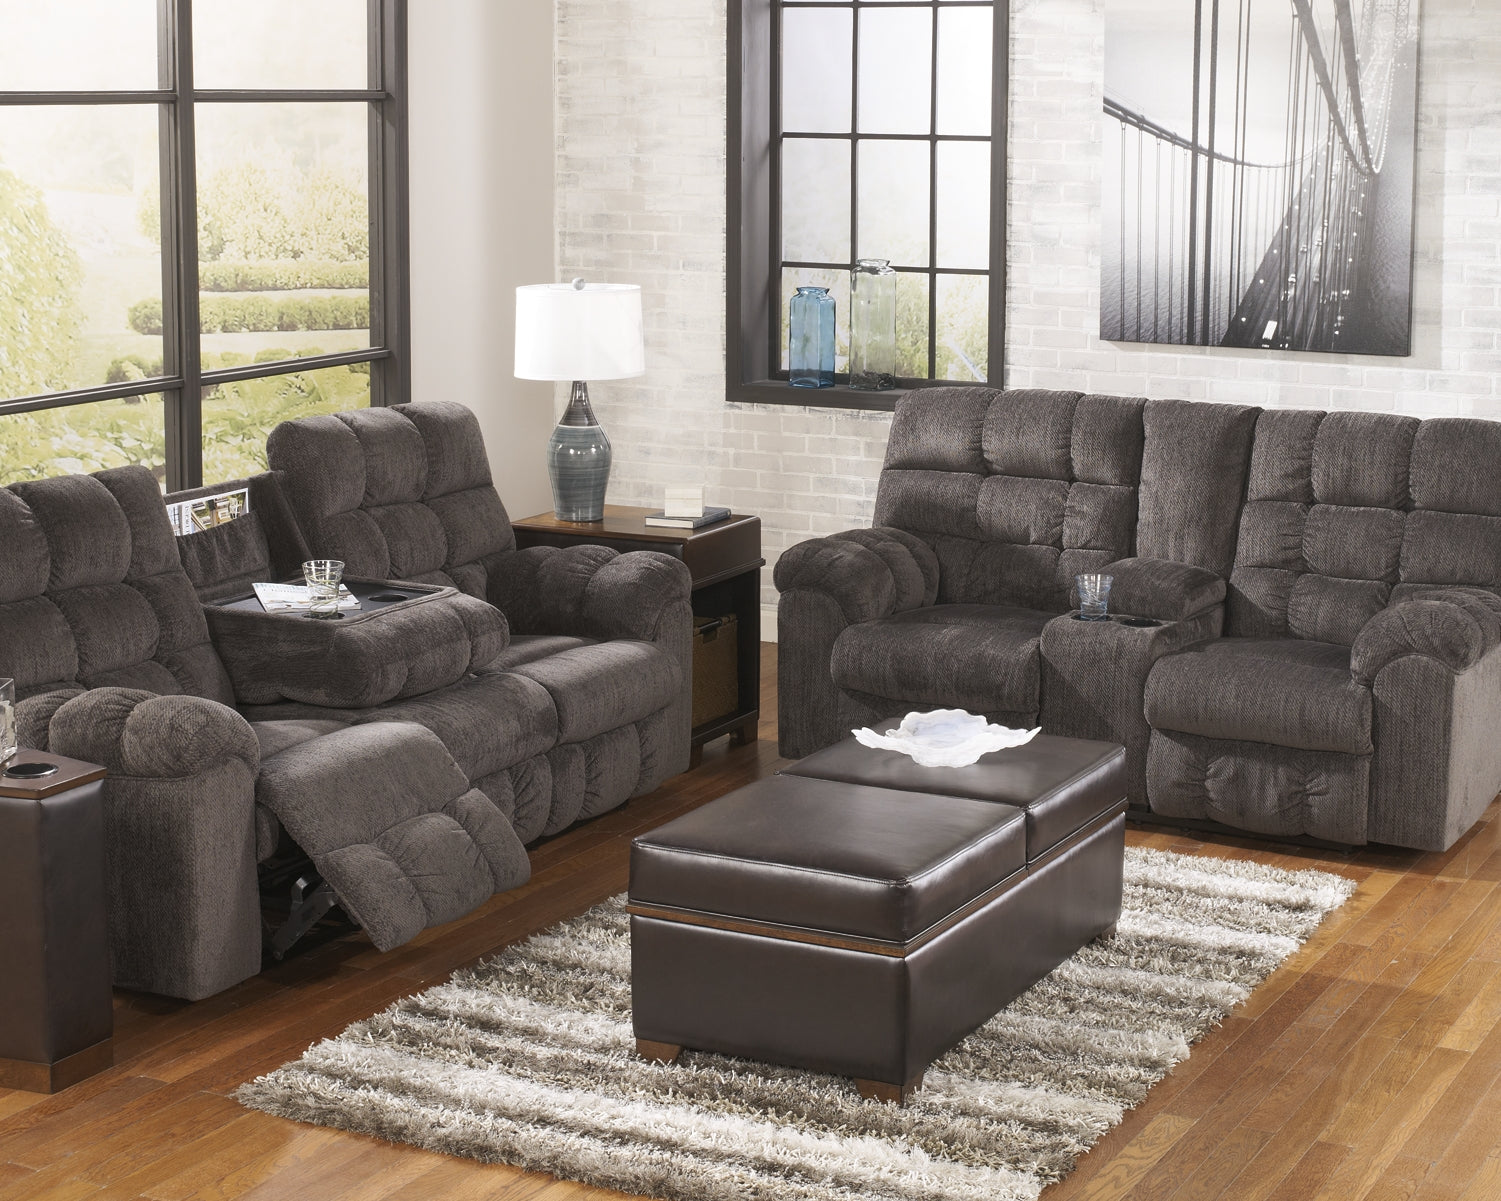 Acieona REC Sofa w/Drop Down Table JB's Furniture Furniture, Bedroom, Accessories